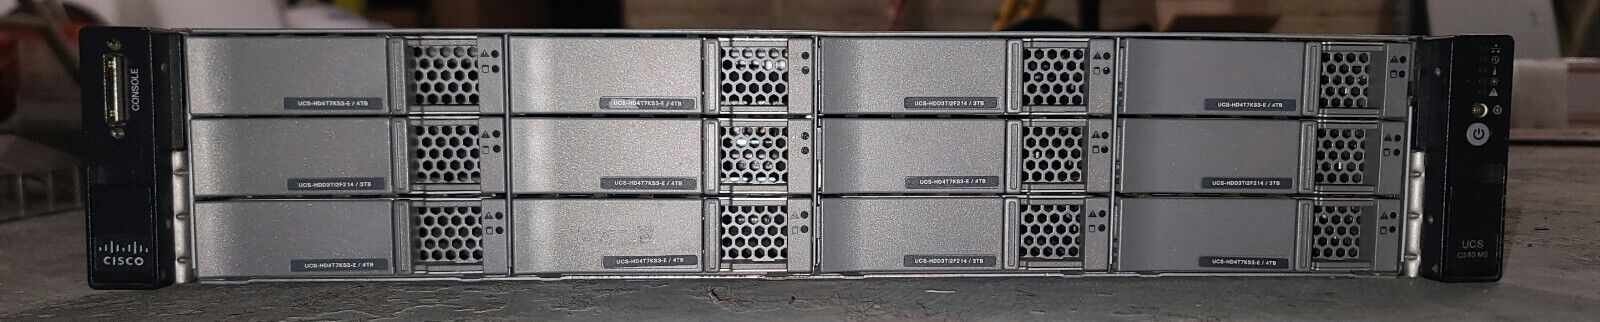 Cisco UCSC-C240-M3L Large Form Factor M3 Rack Server